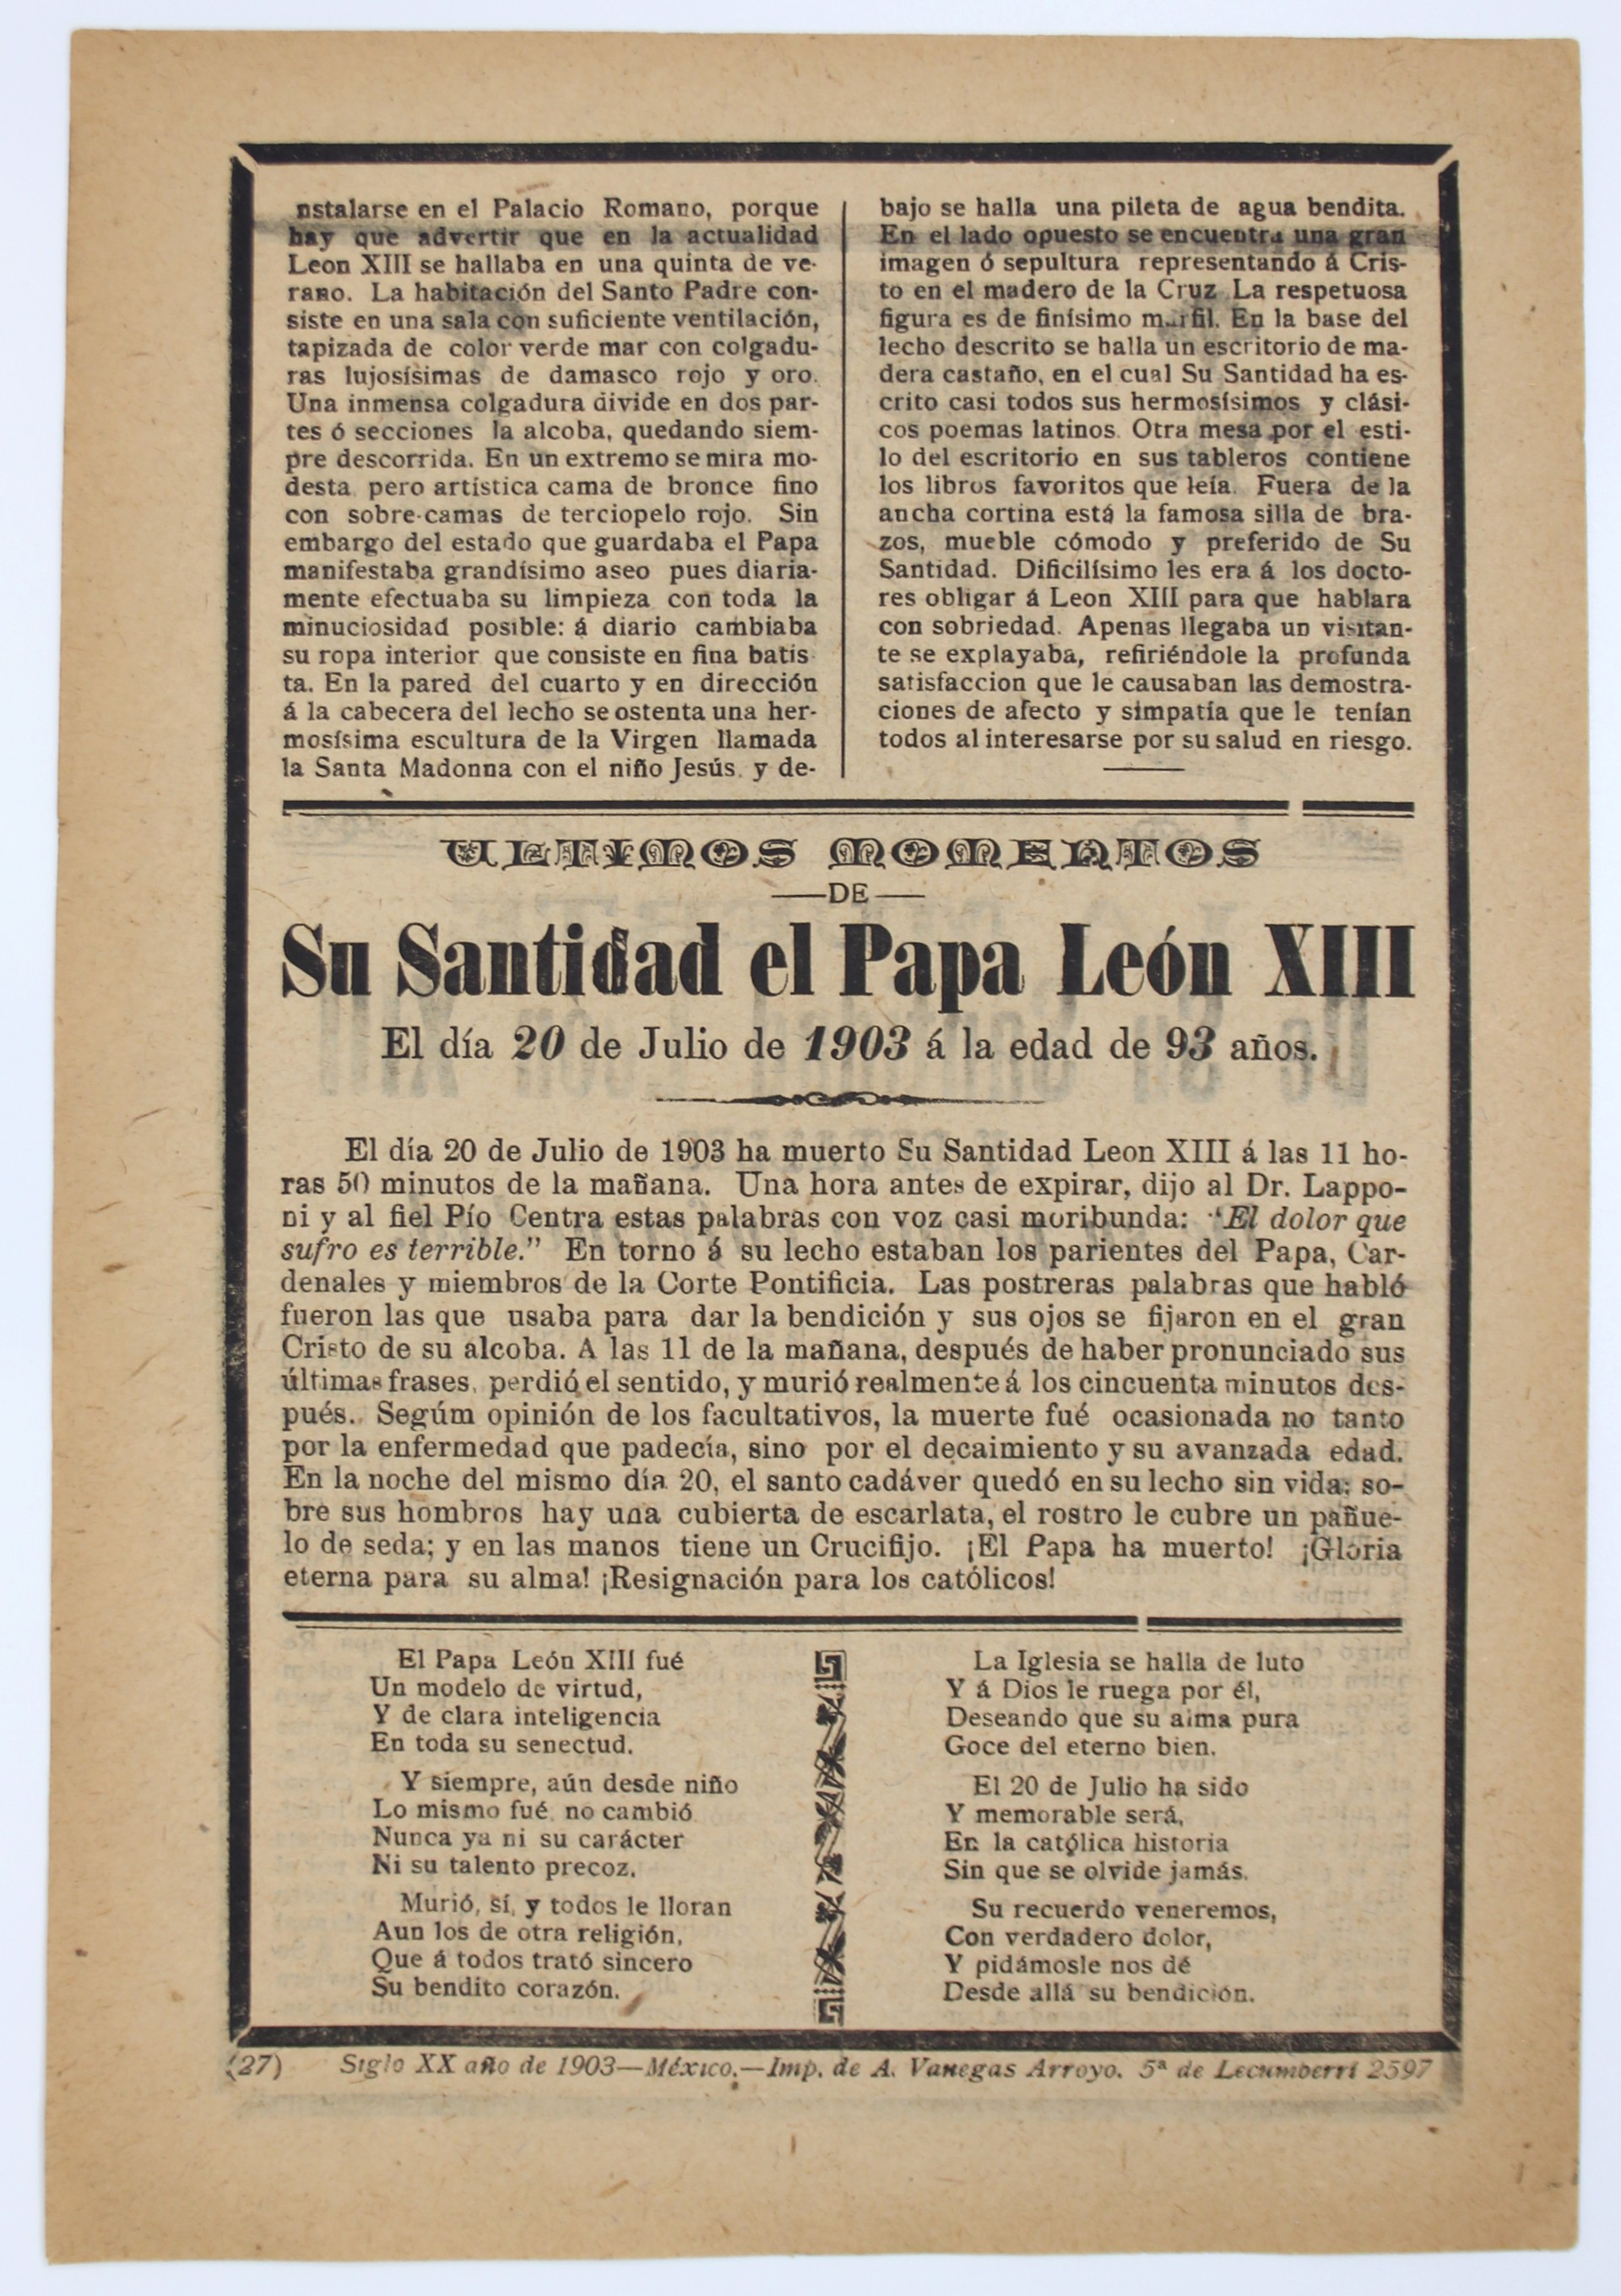 La Muerte de Su Santidad Leon XIII by José Guadalupe Posada